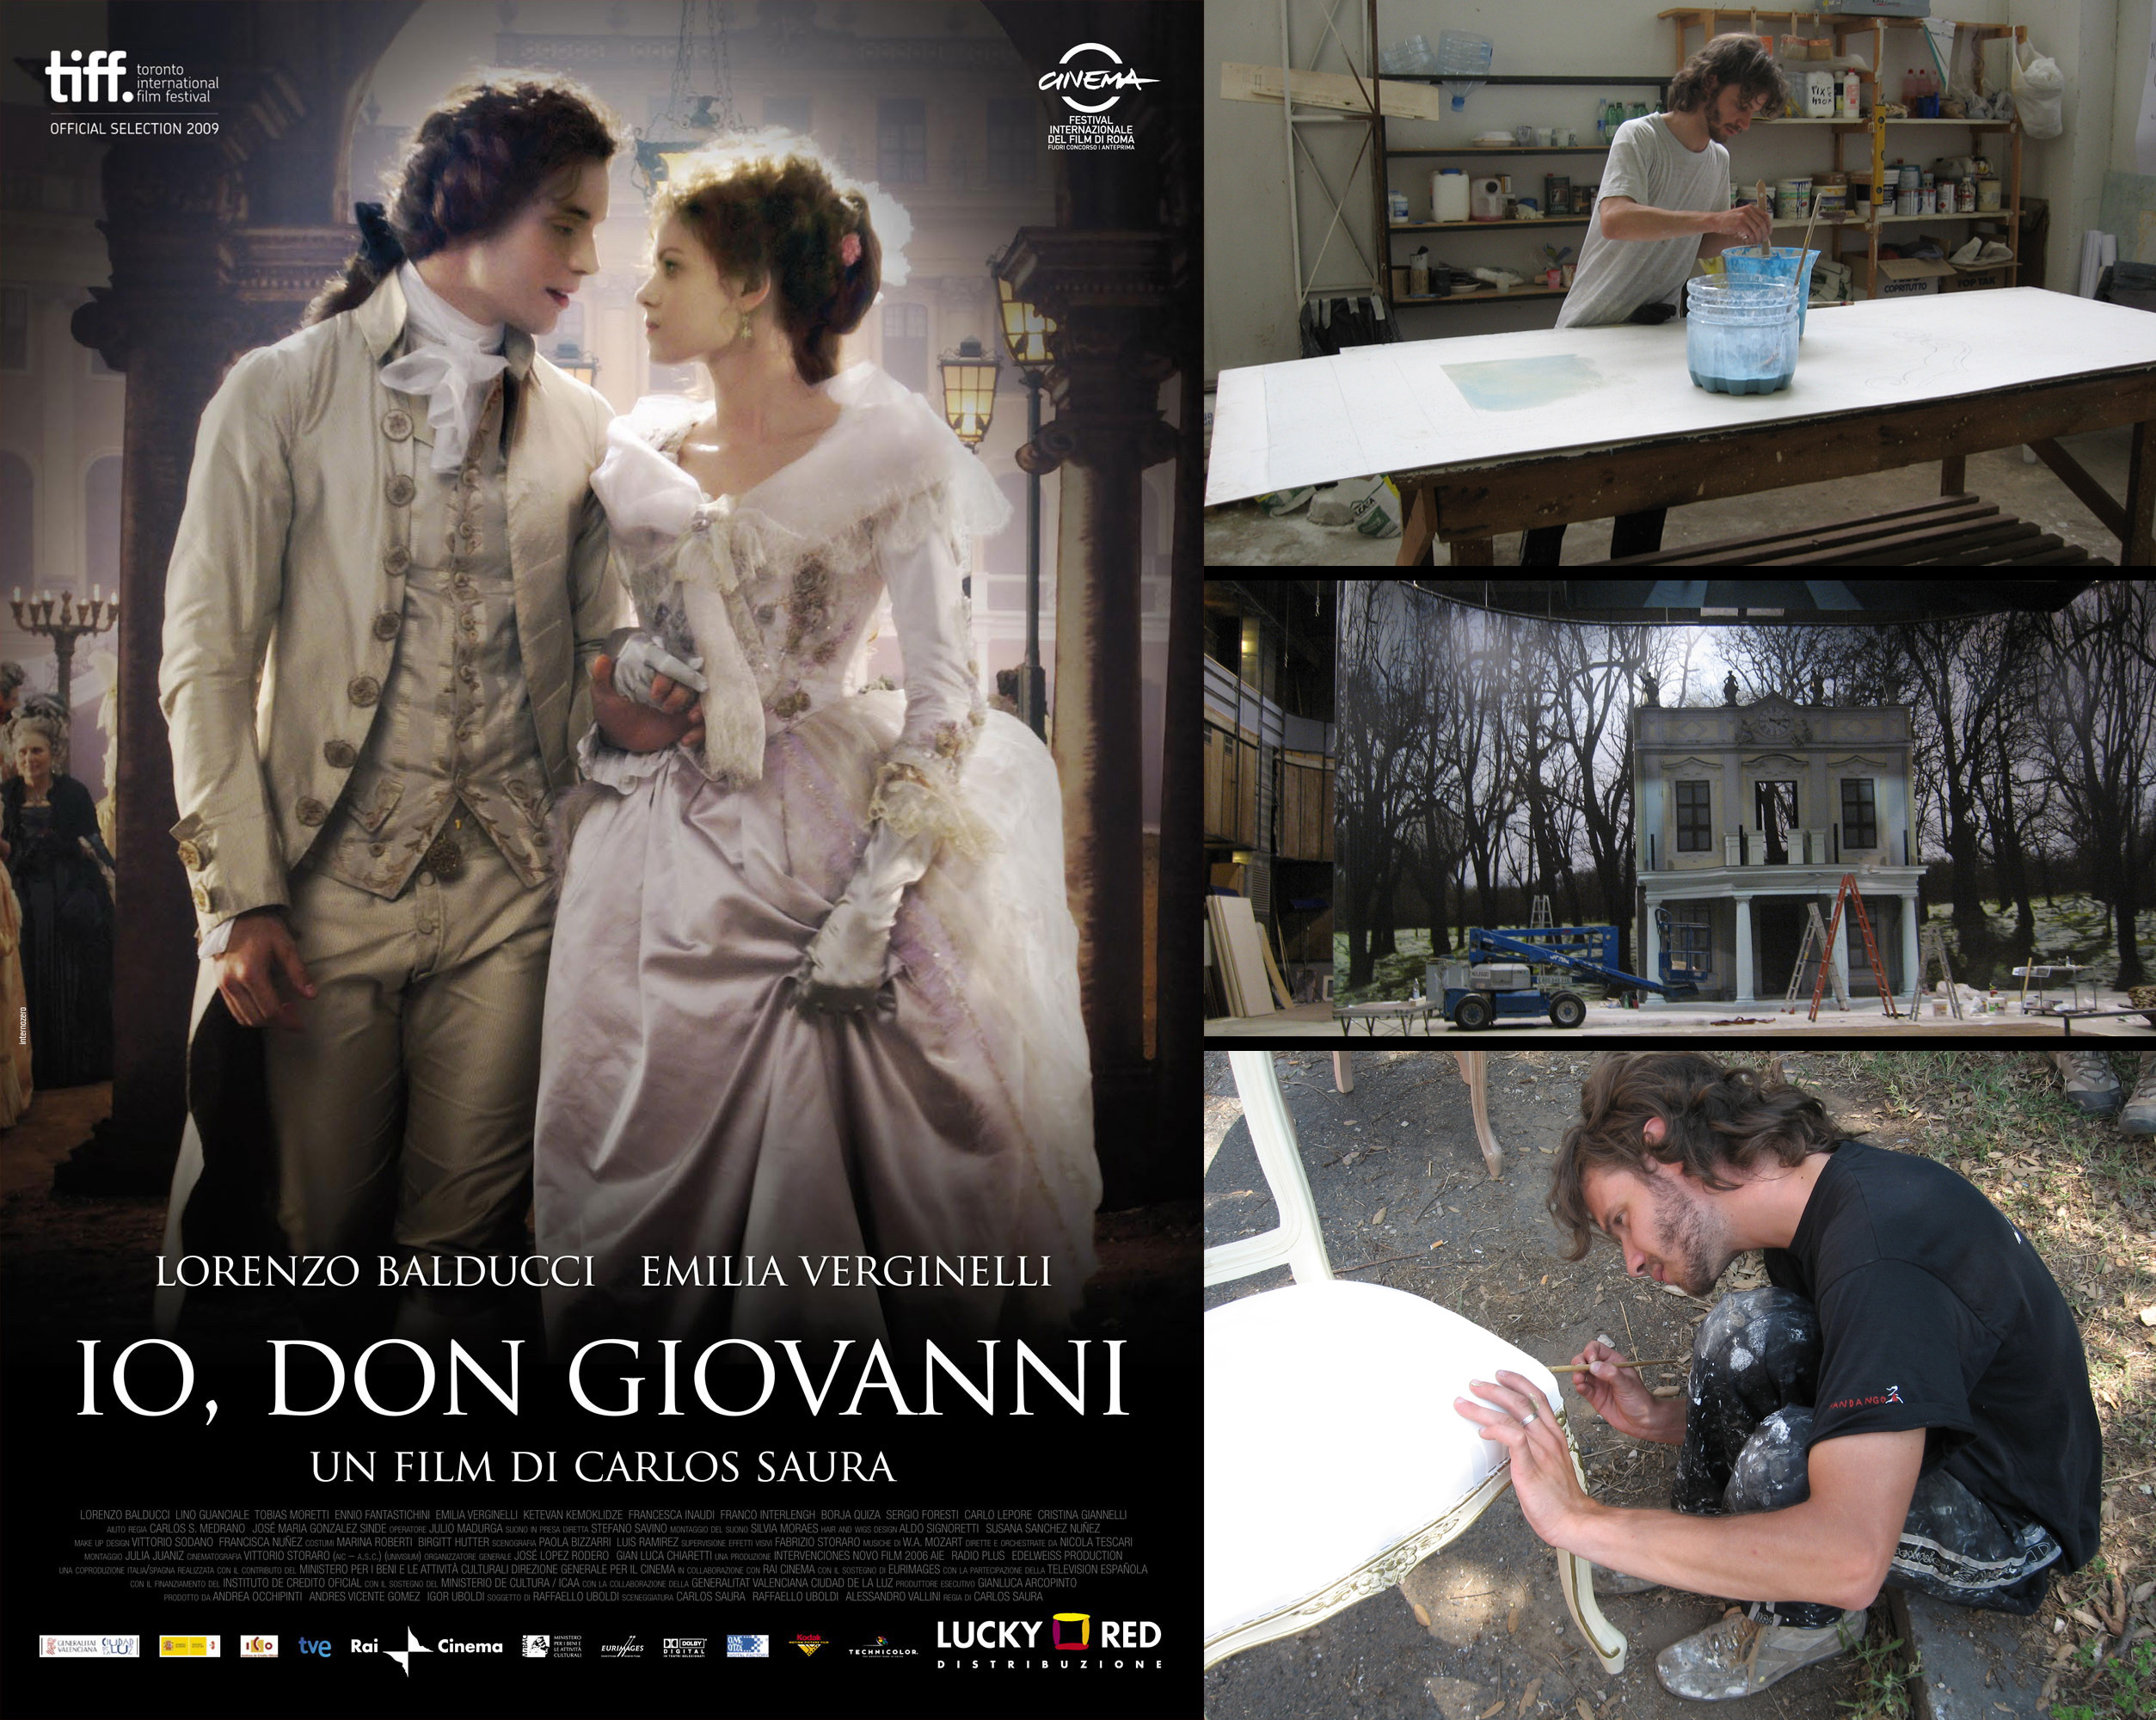 
Pittore di scena del film 'Io, Don Giovanni' (2008), di Carlos Saura.
Lavorazione
